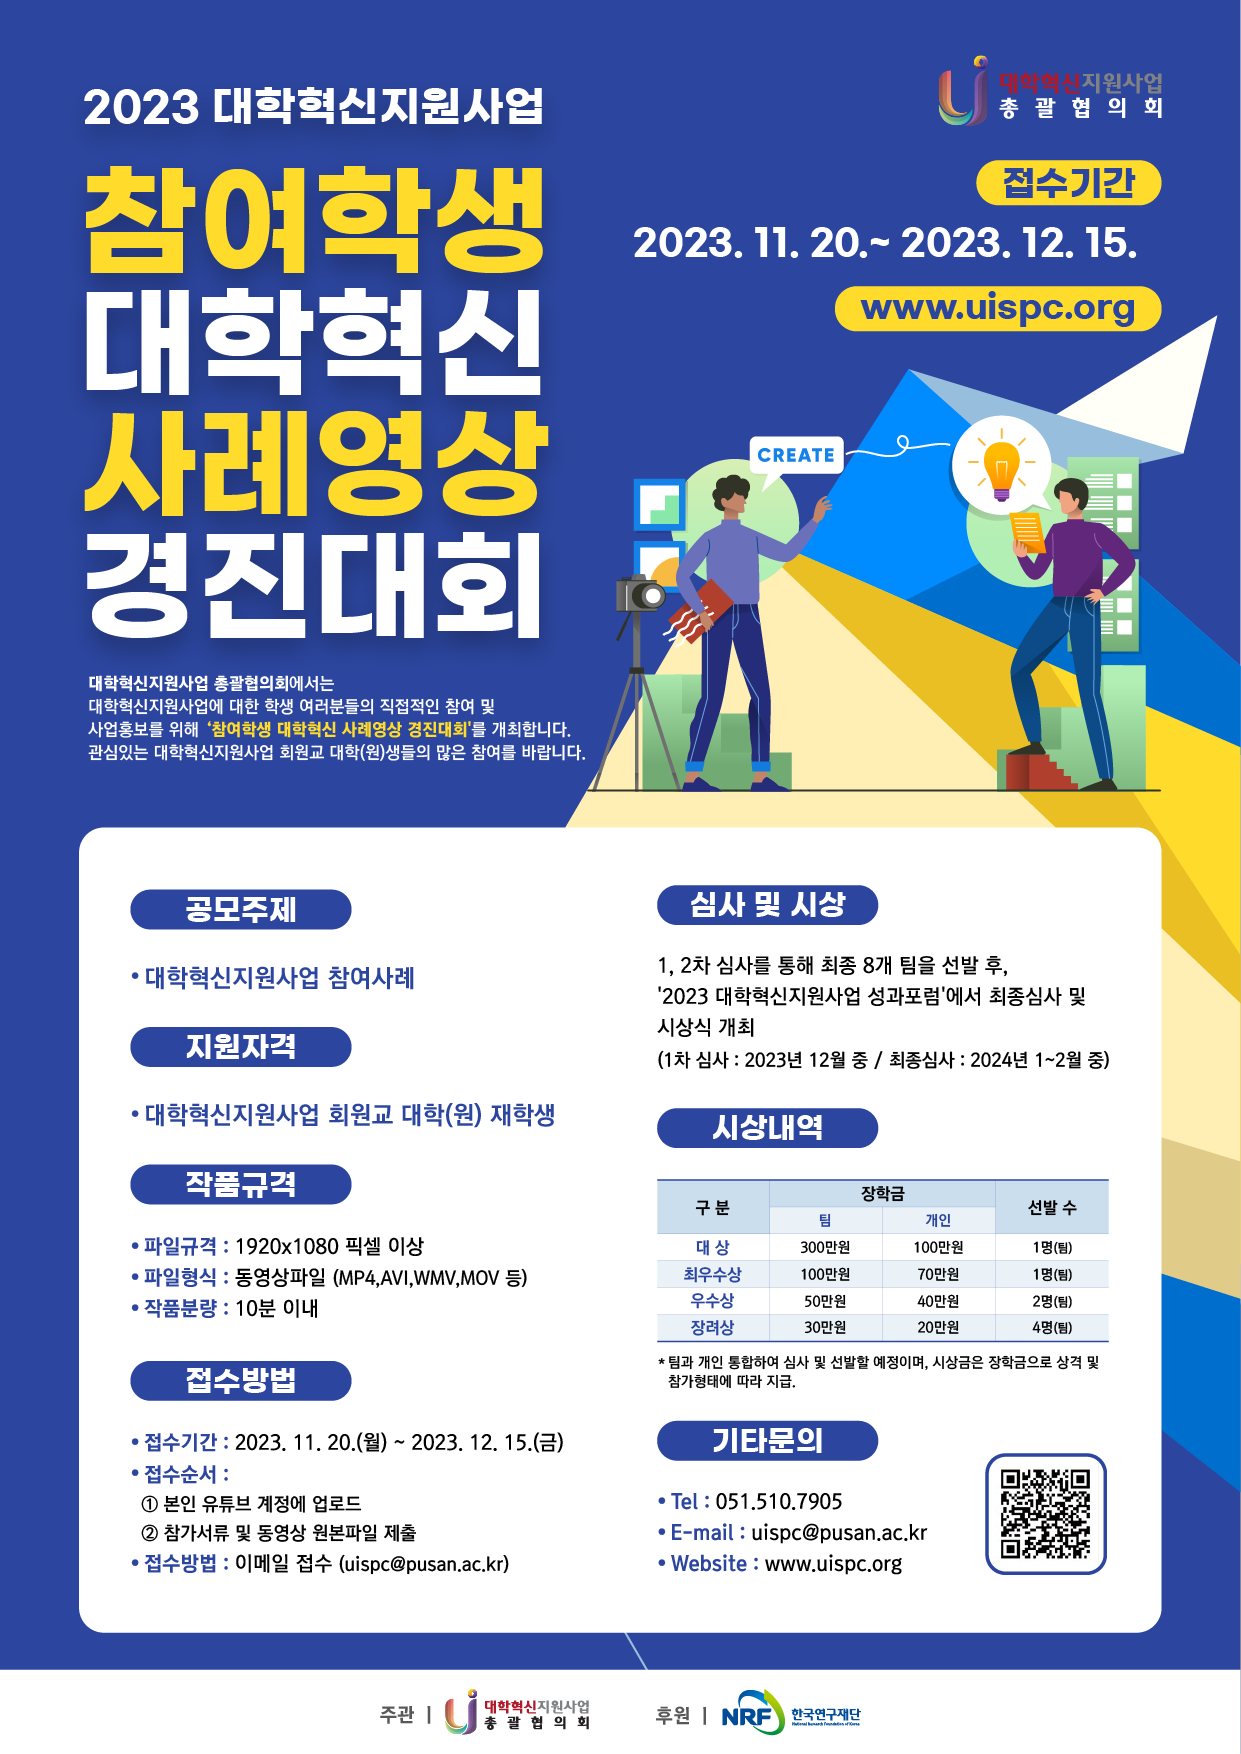 [홍보] 참여학생 대학혁신 사례영상 경진대회